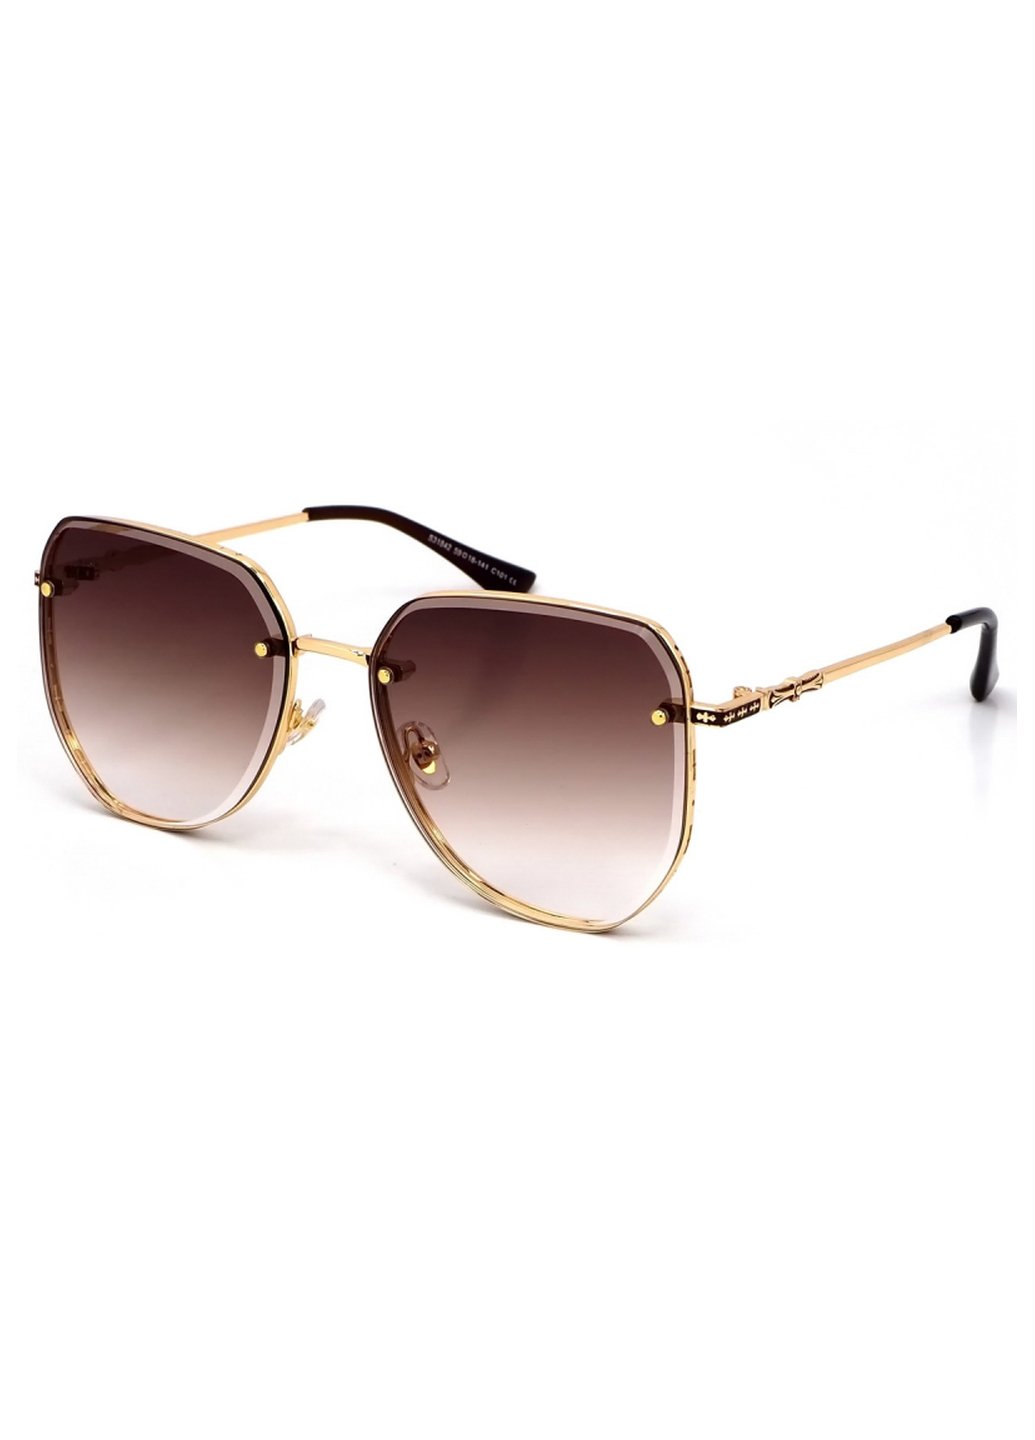 Купить Женские солнцезащитные очки Merlini с поляризацией S31842 117125 - Золотистый в интернет-магазине